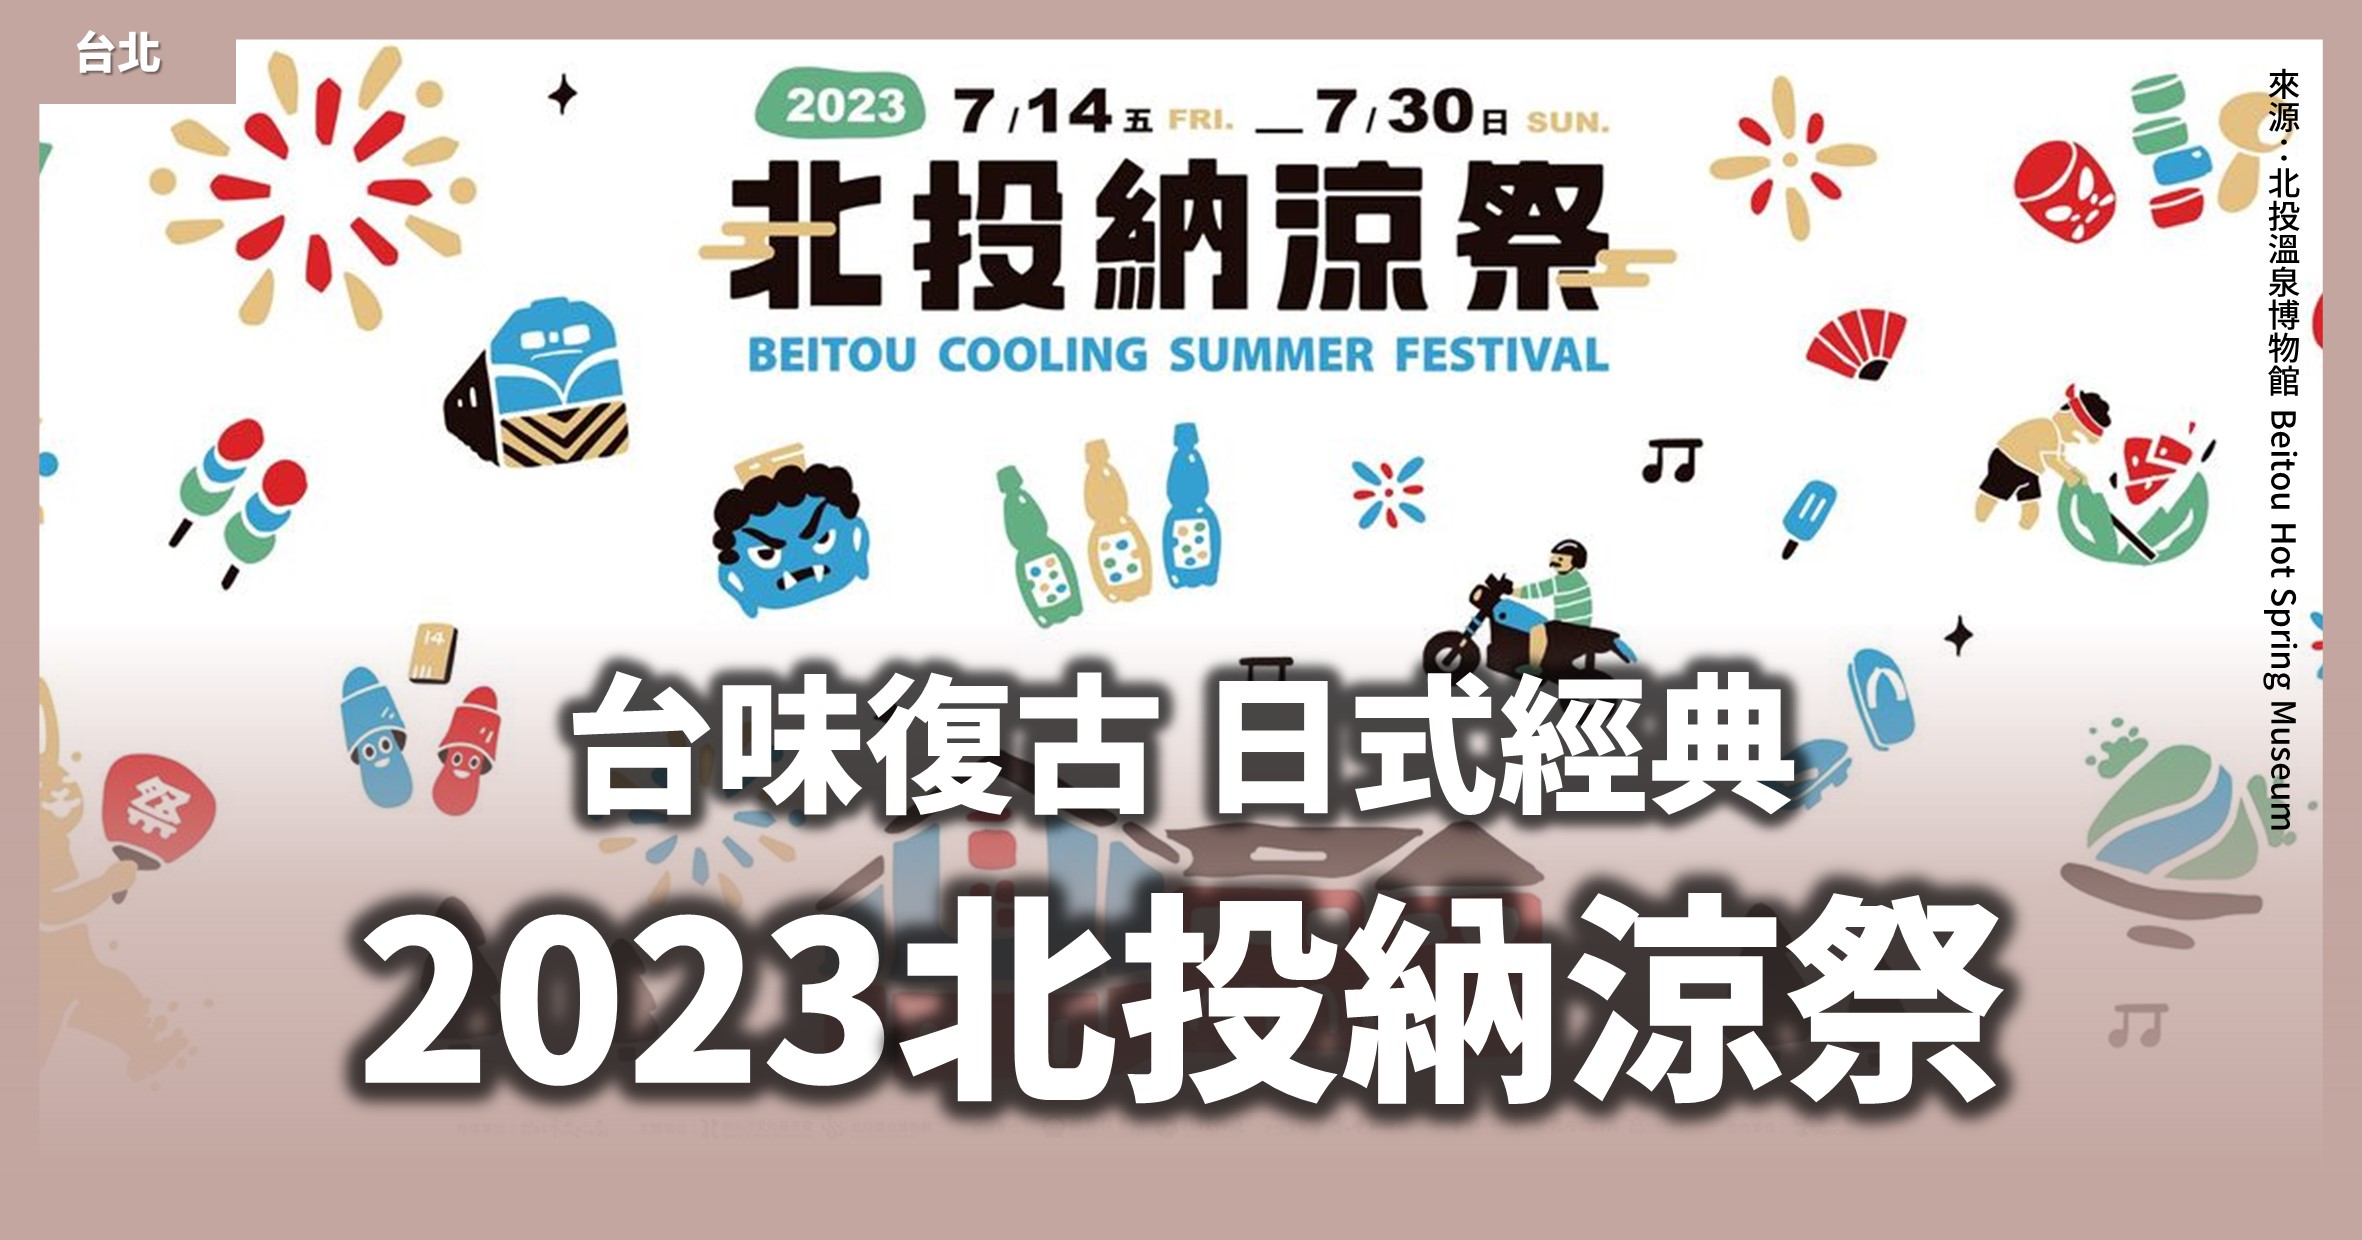 台北「2023北投納涼祭」為期17天的北投走讀、DIY活動、打西瓜比賽 @漫步時光